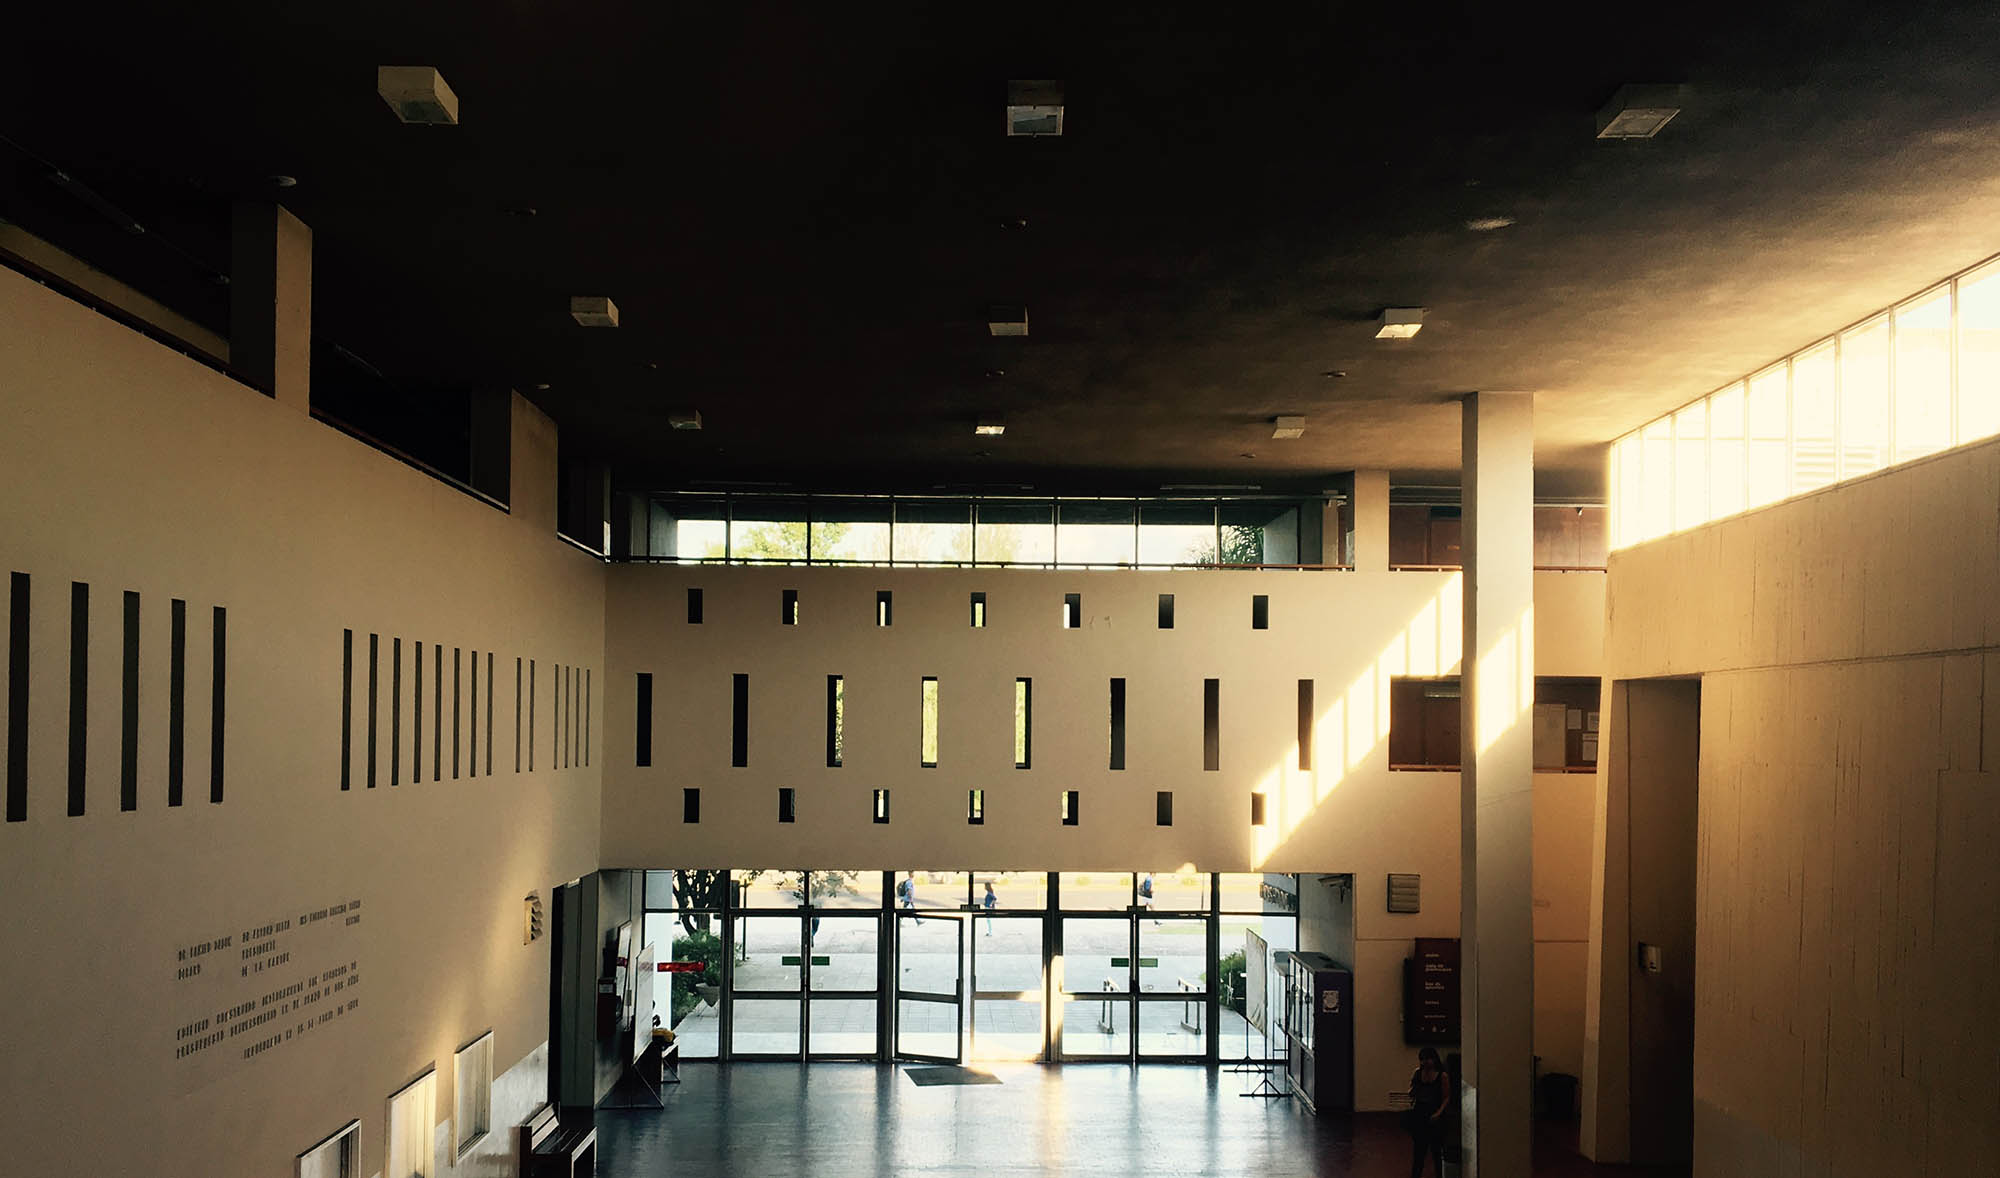 El espacio central de la Facultad sin personas en una tarde soleada y tranquila